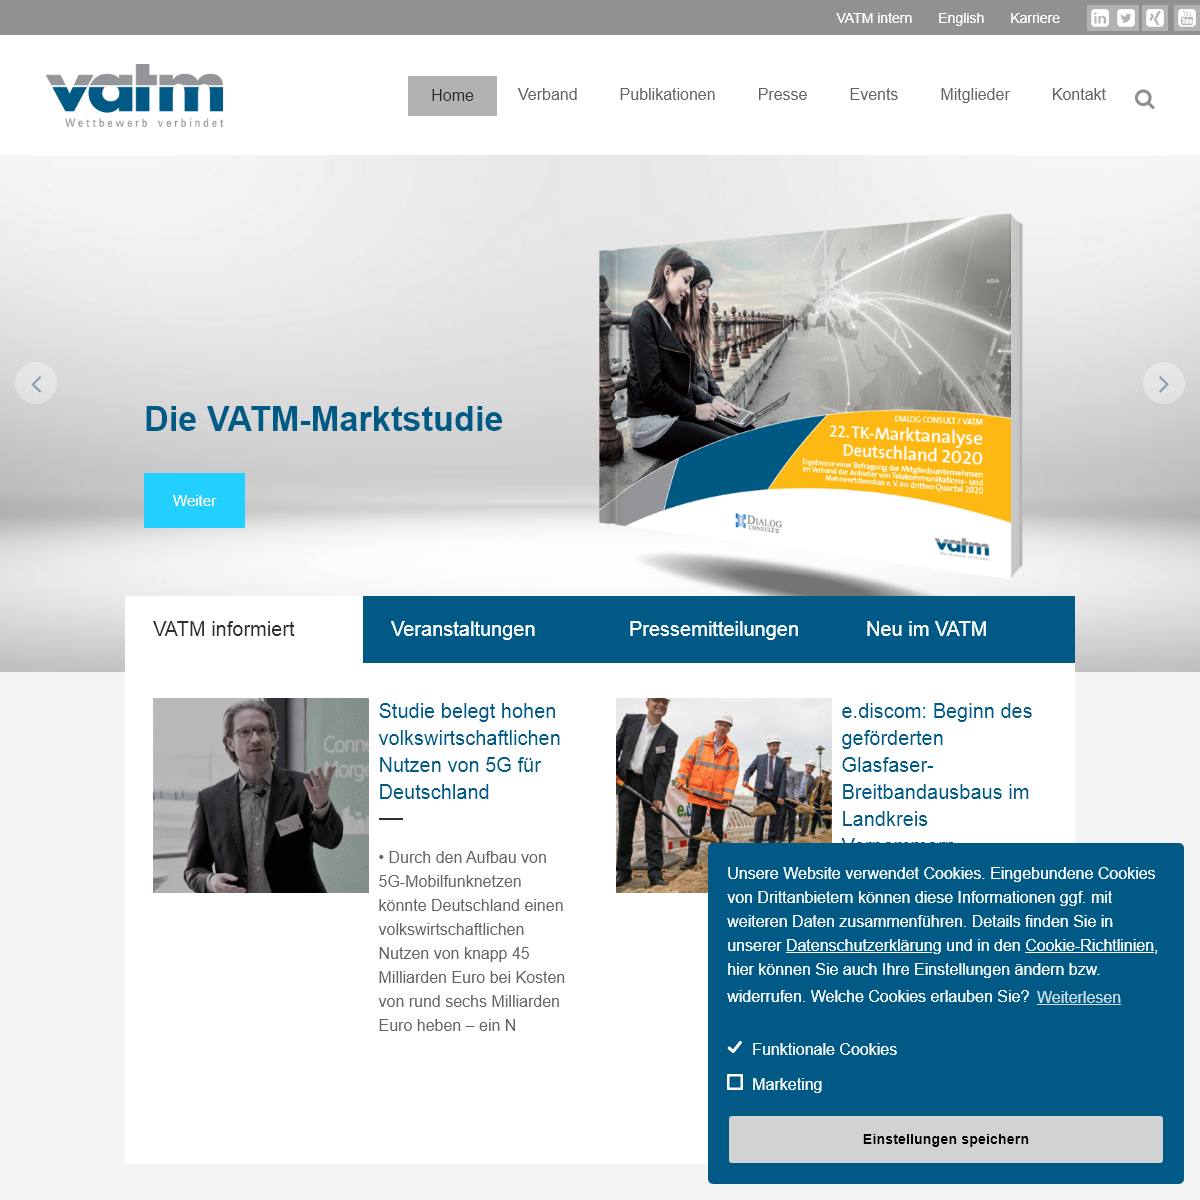 A complete backup of vatm.de